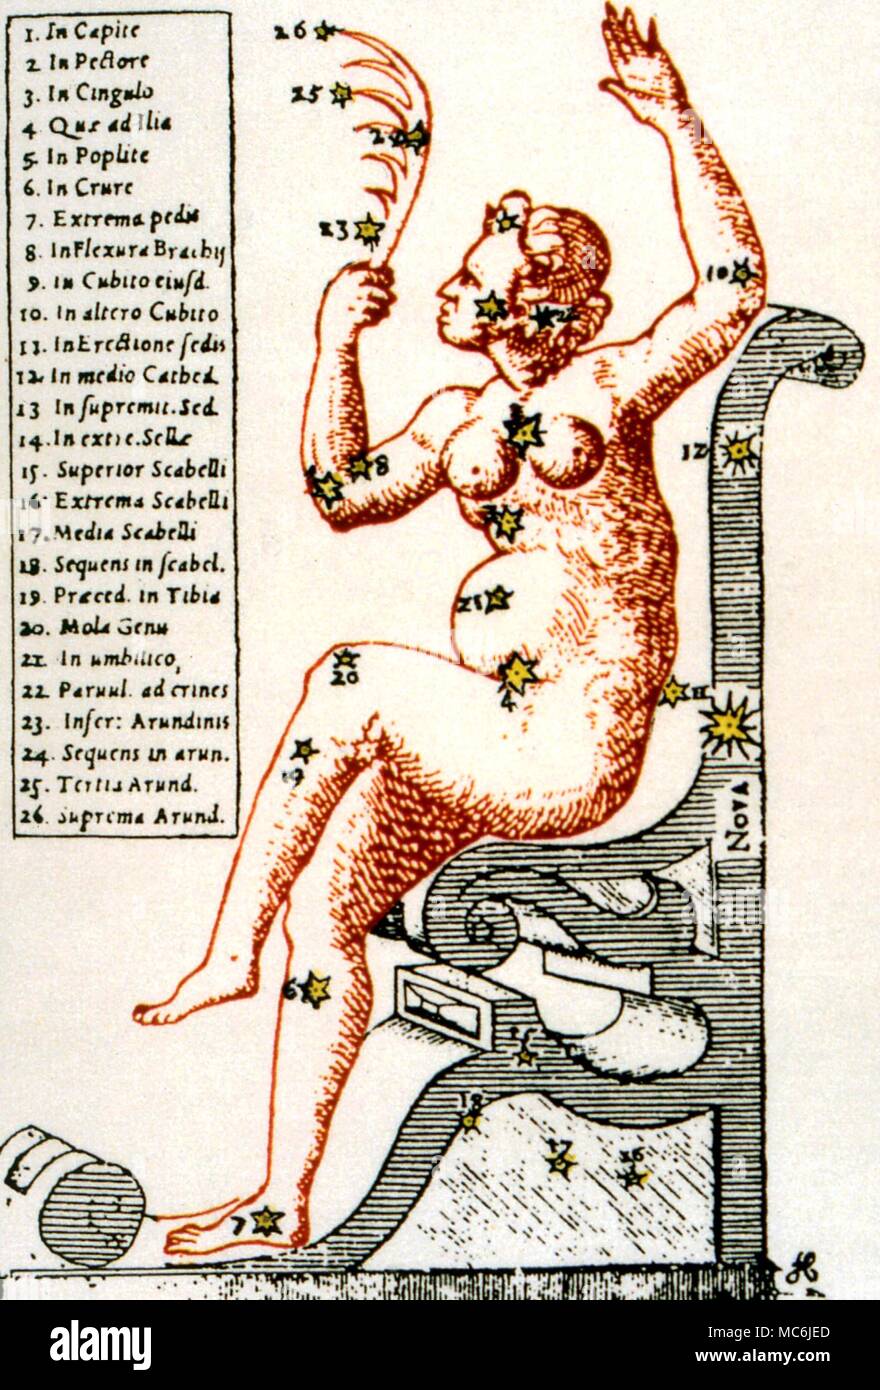 NOSTRADAMUS - - previsione della NOVA. In quartina 2:41 (pubblicato 1555), Nostradamus predice la Nova, o la nuova stella del 1572. Il Nova è apparso nella costellazione di Cassiopea, impostare nel retro della sua sedia. L'illustrazione è da Tycho Brahe, Astronomiae instauratae progymnasmata, 1602 Foto Stock